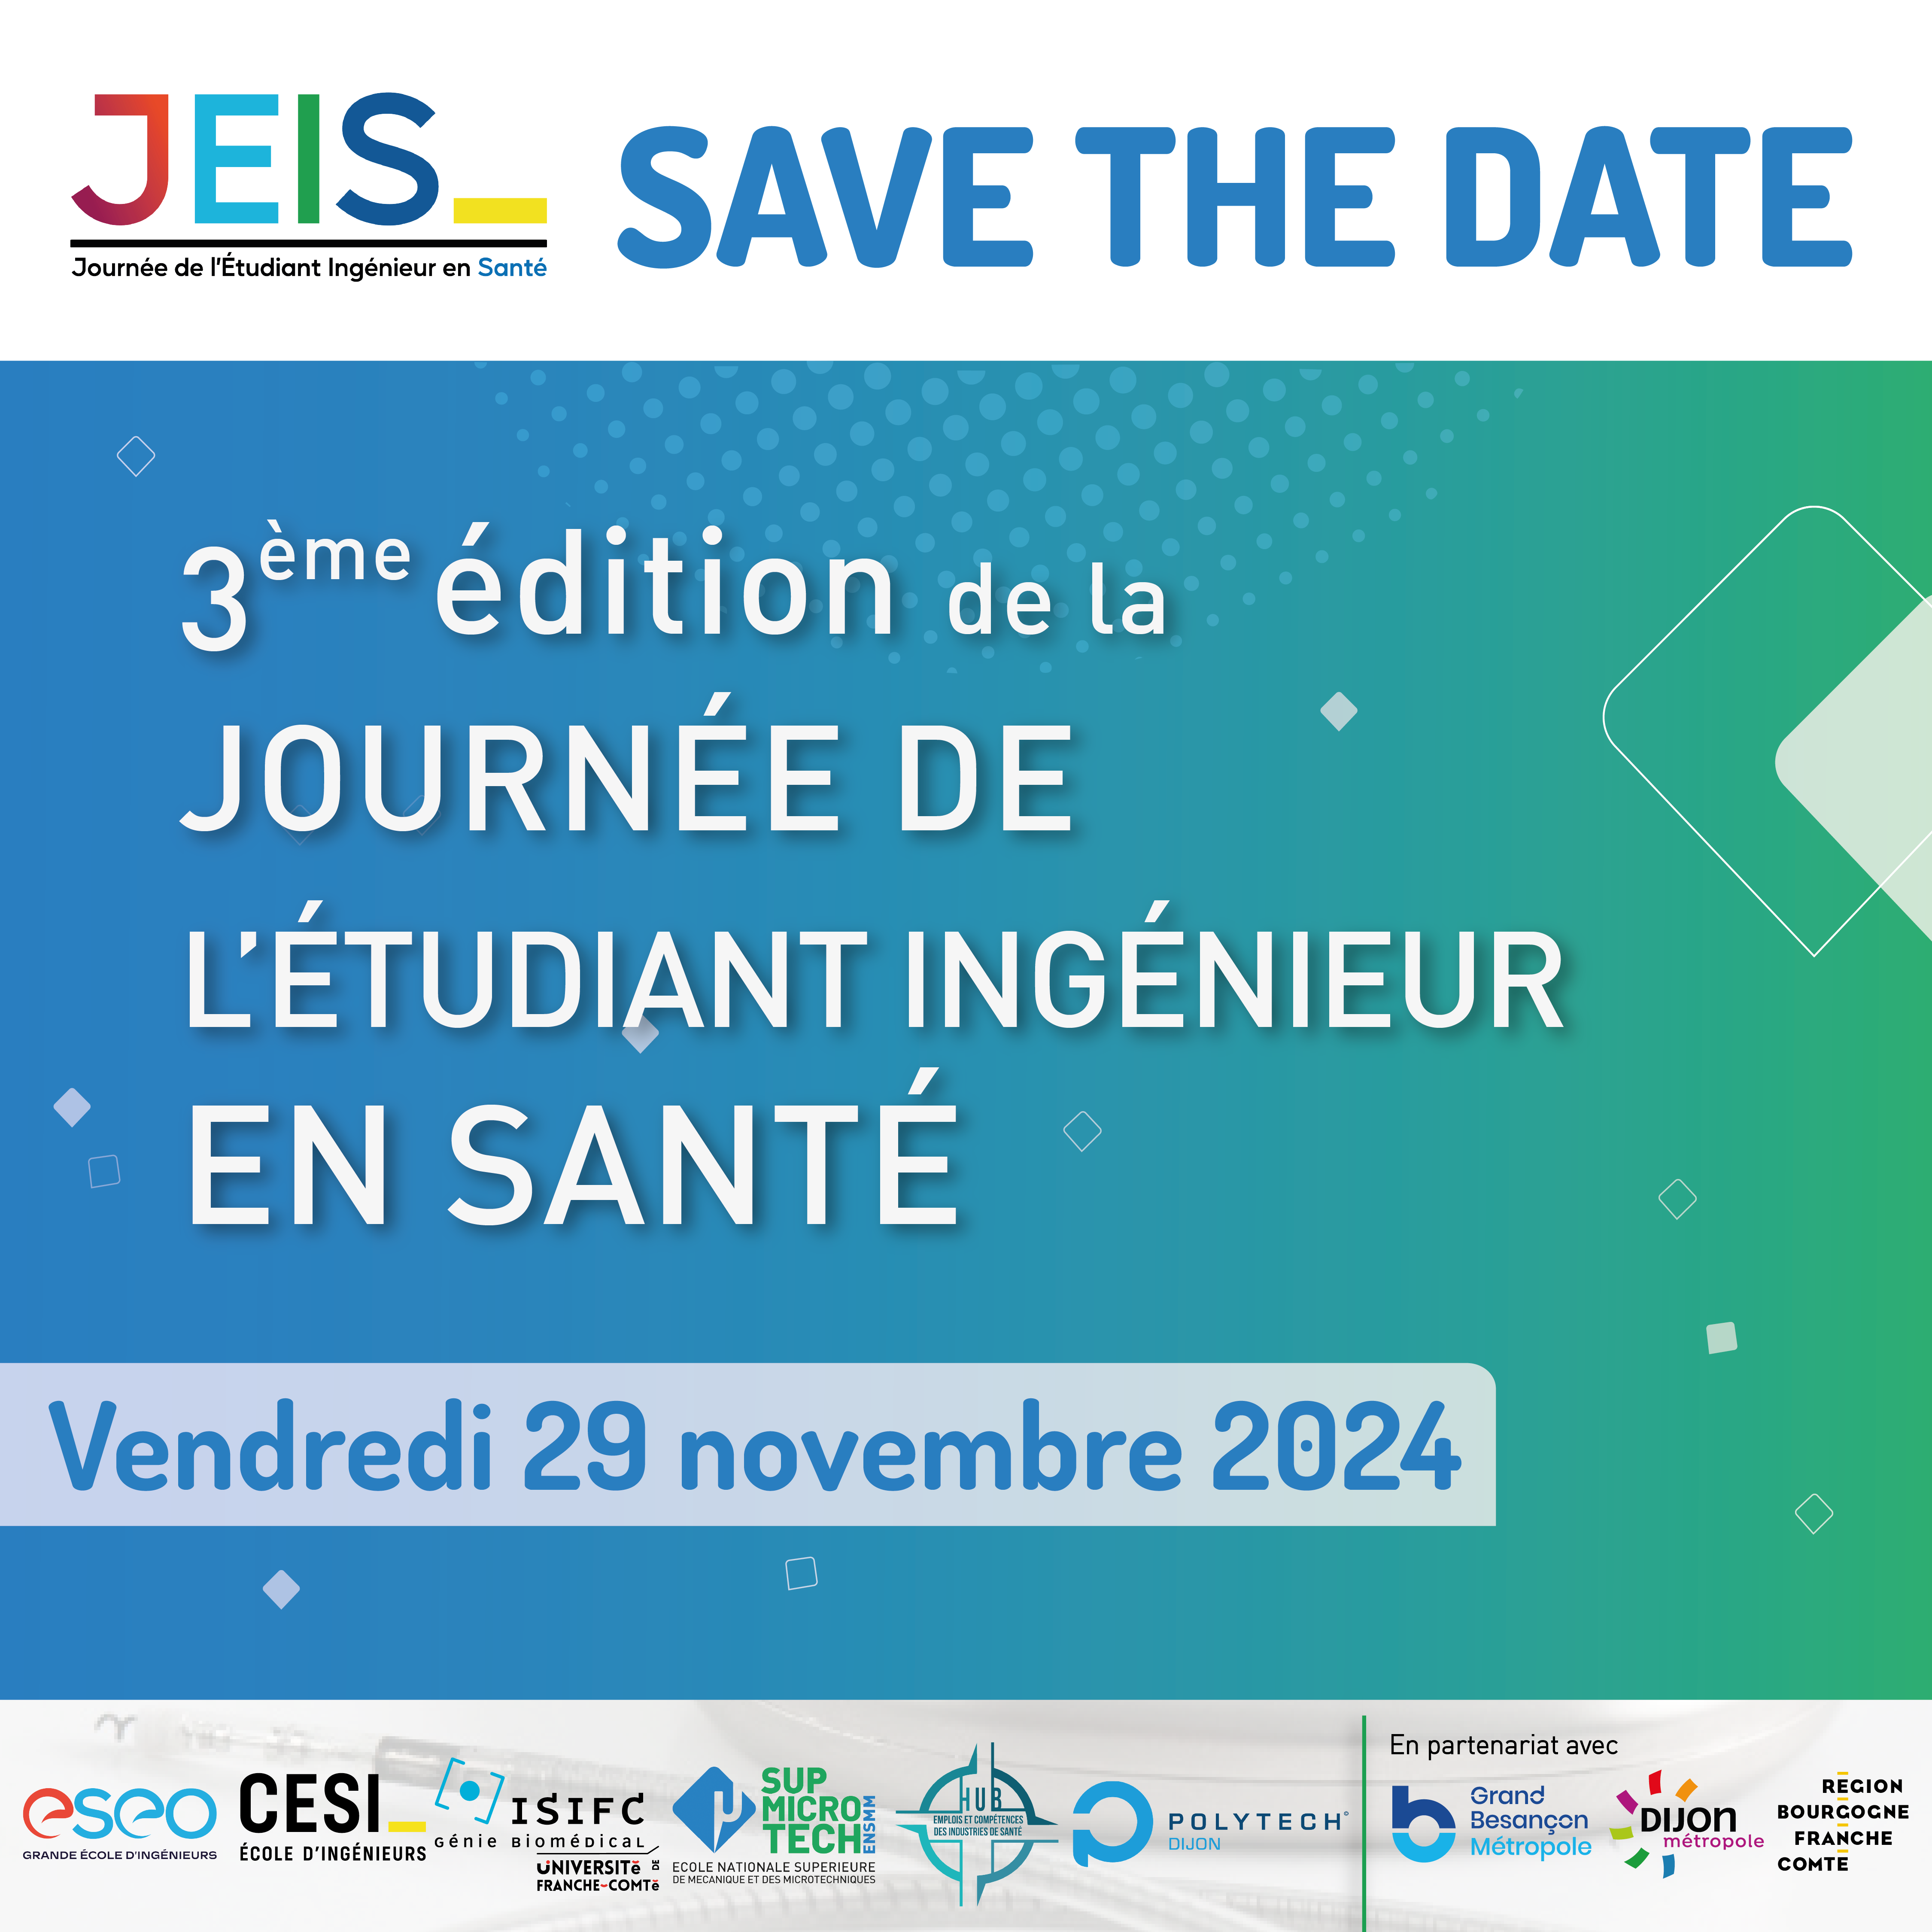 Journée de l’Etudiant Ingénieur en Santé à ESEO Dijon